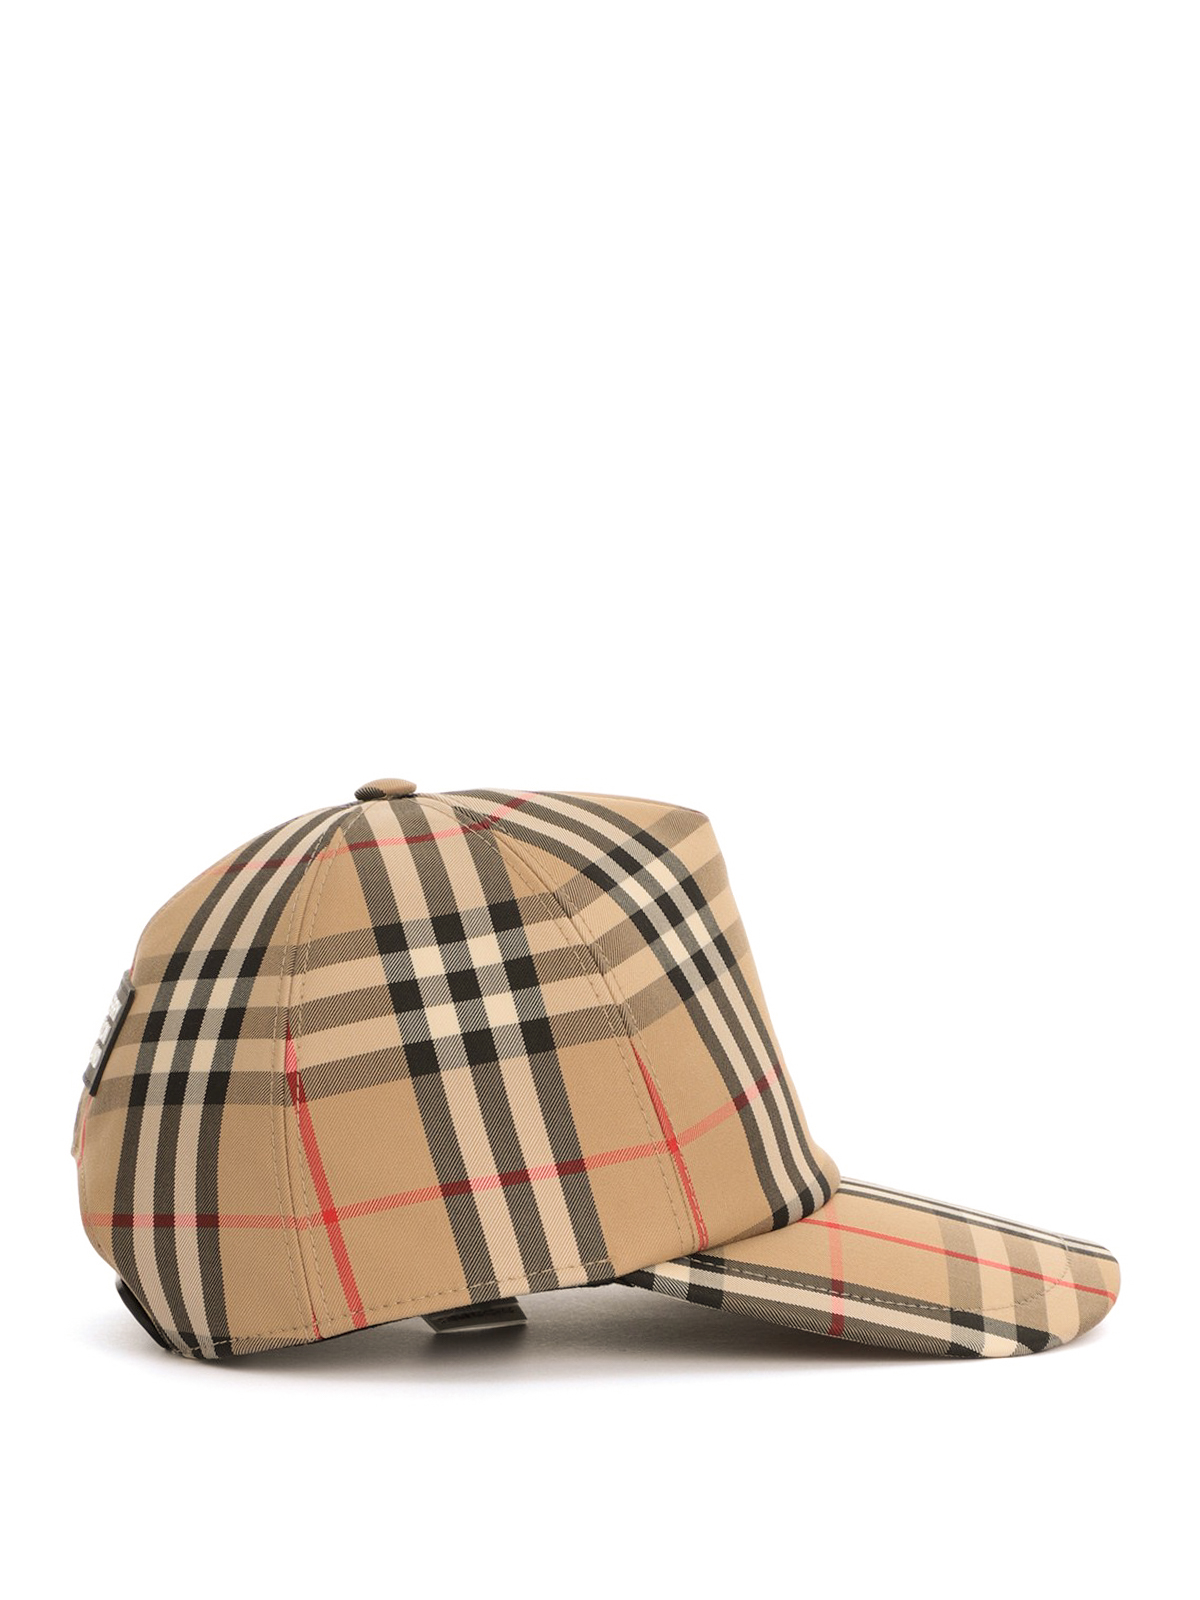 Hats & caps Burberry - Vintage Check baseball cap - | iKRIX.com